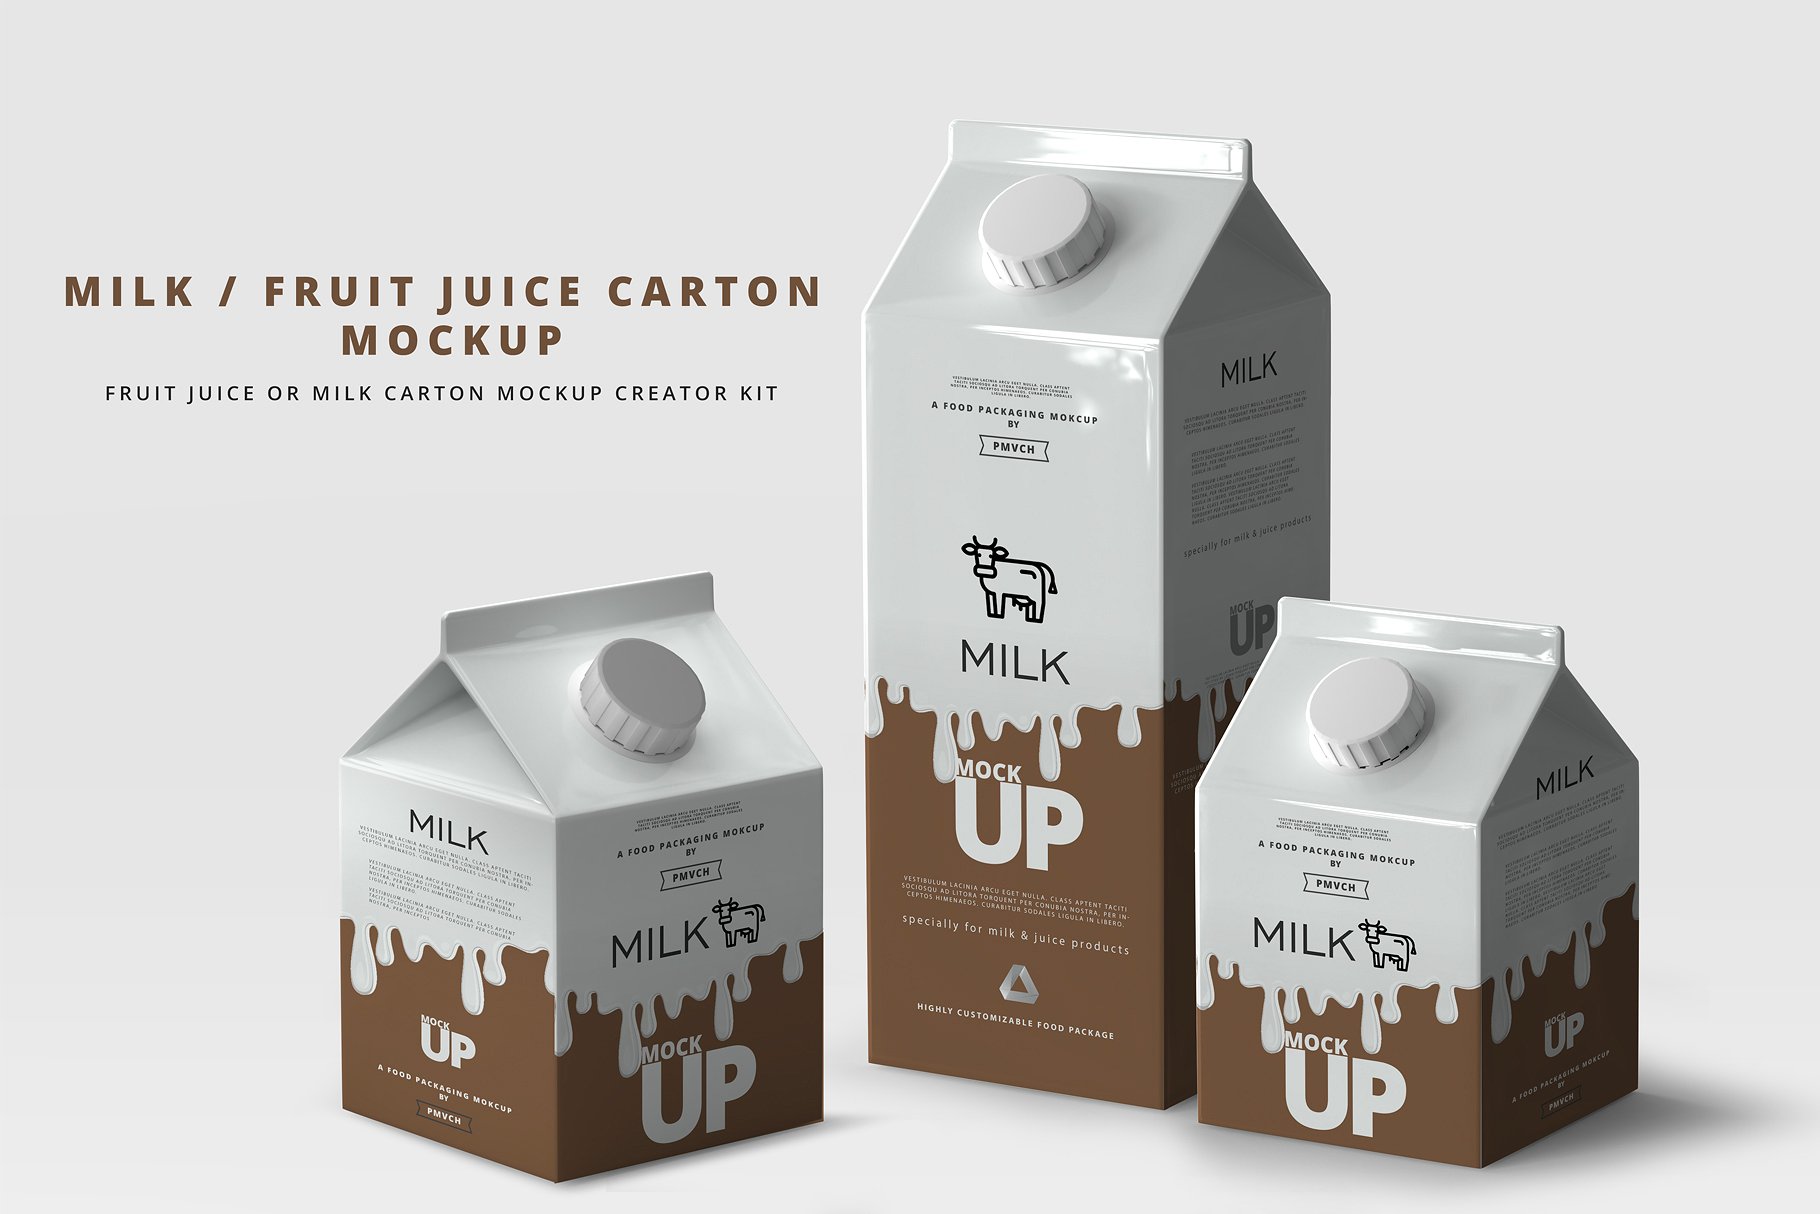 牛奶&果汁纸盒包装展示样机 Milk / Fruit Juice Carton Mockup [psd]插图